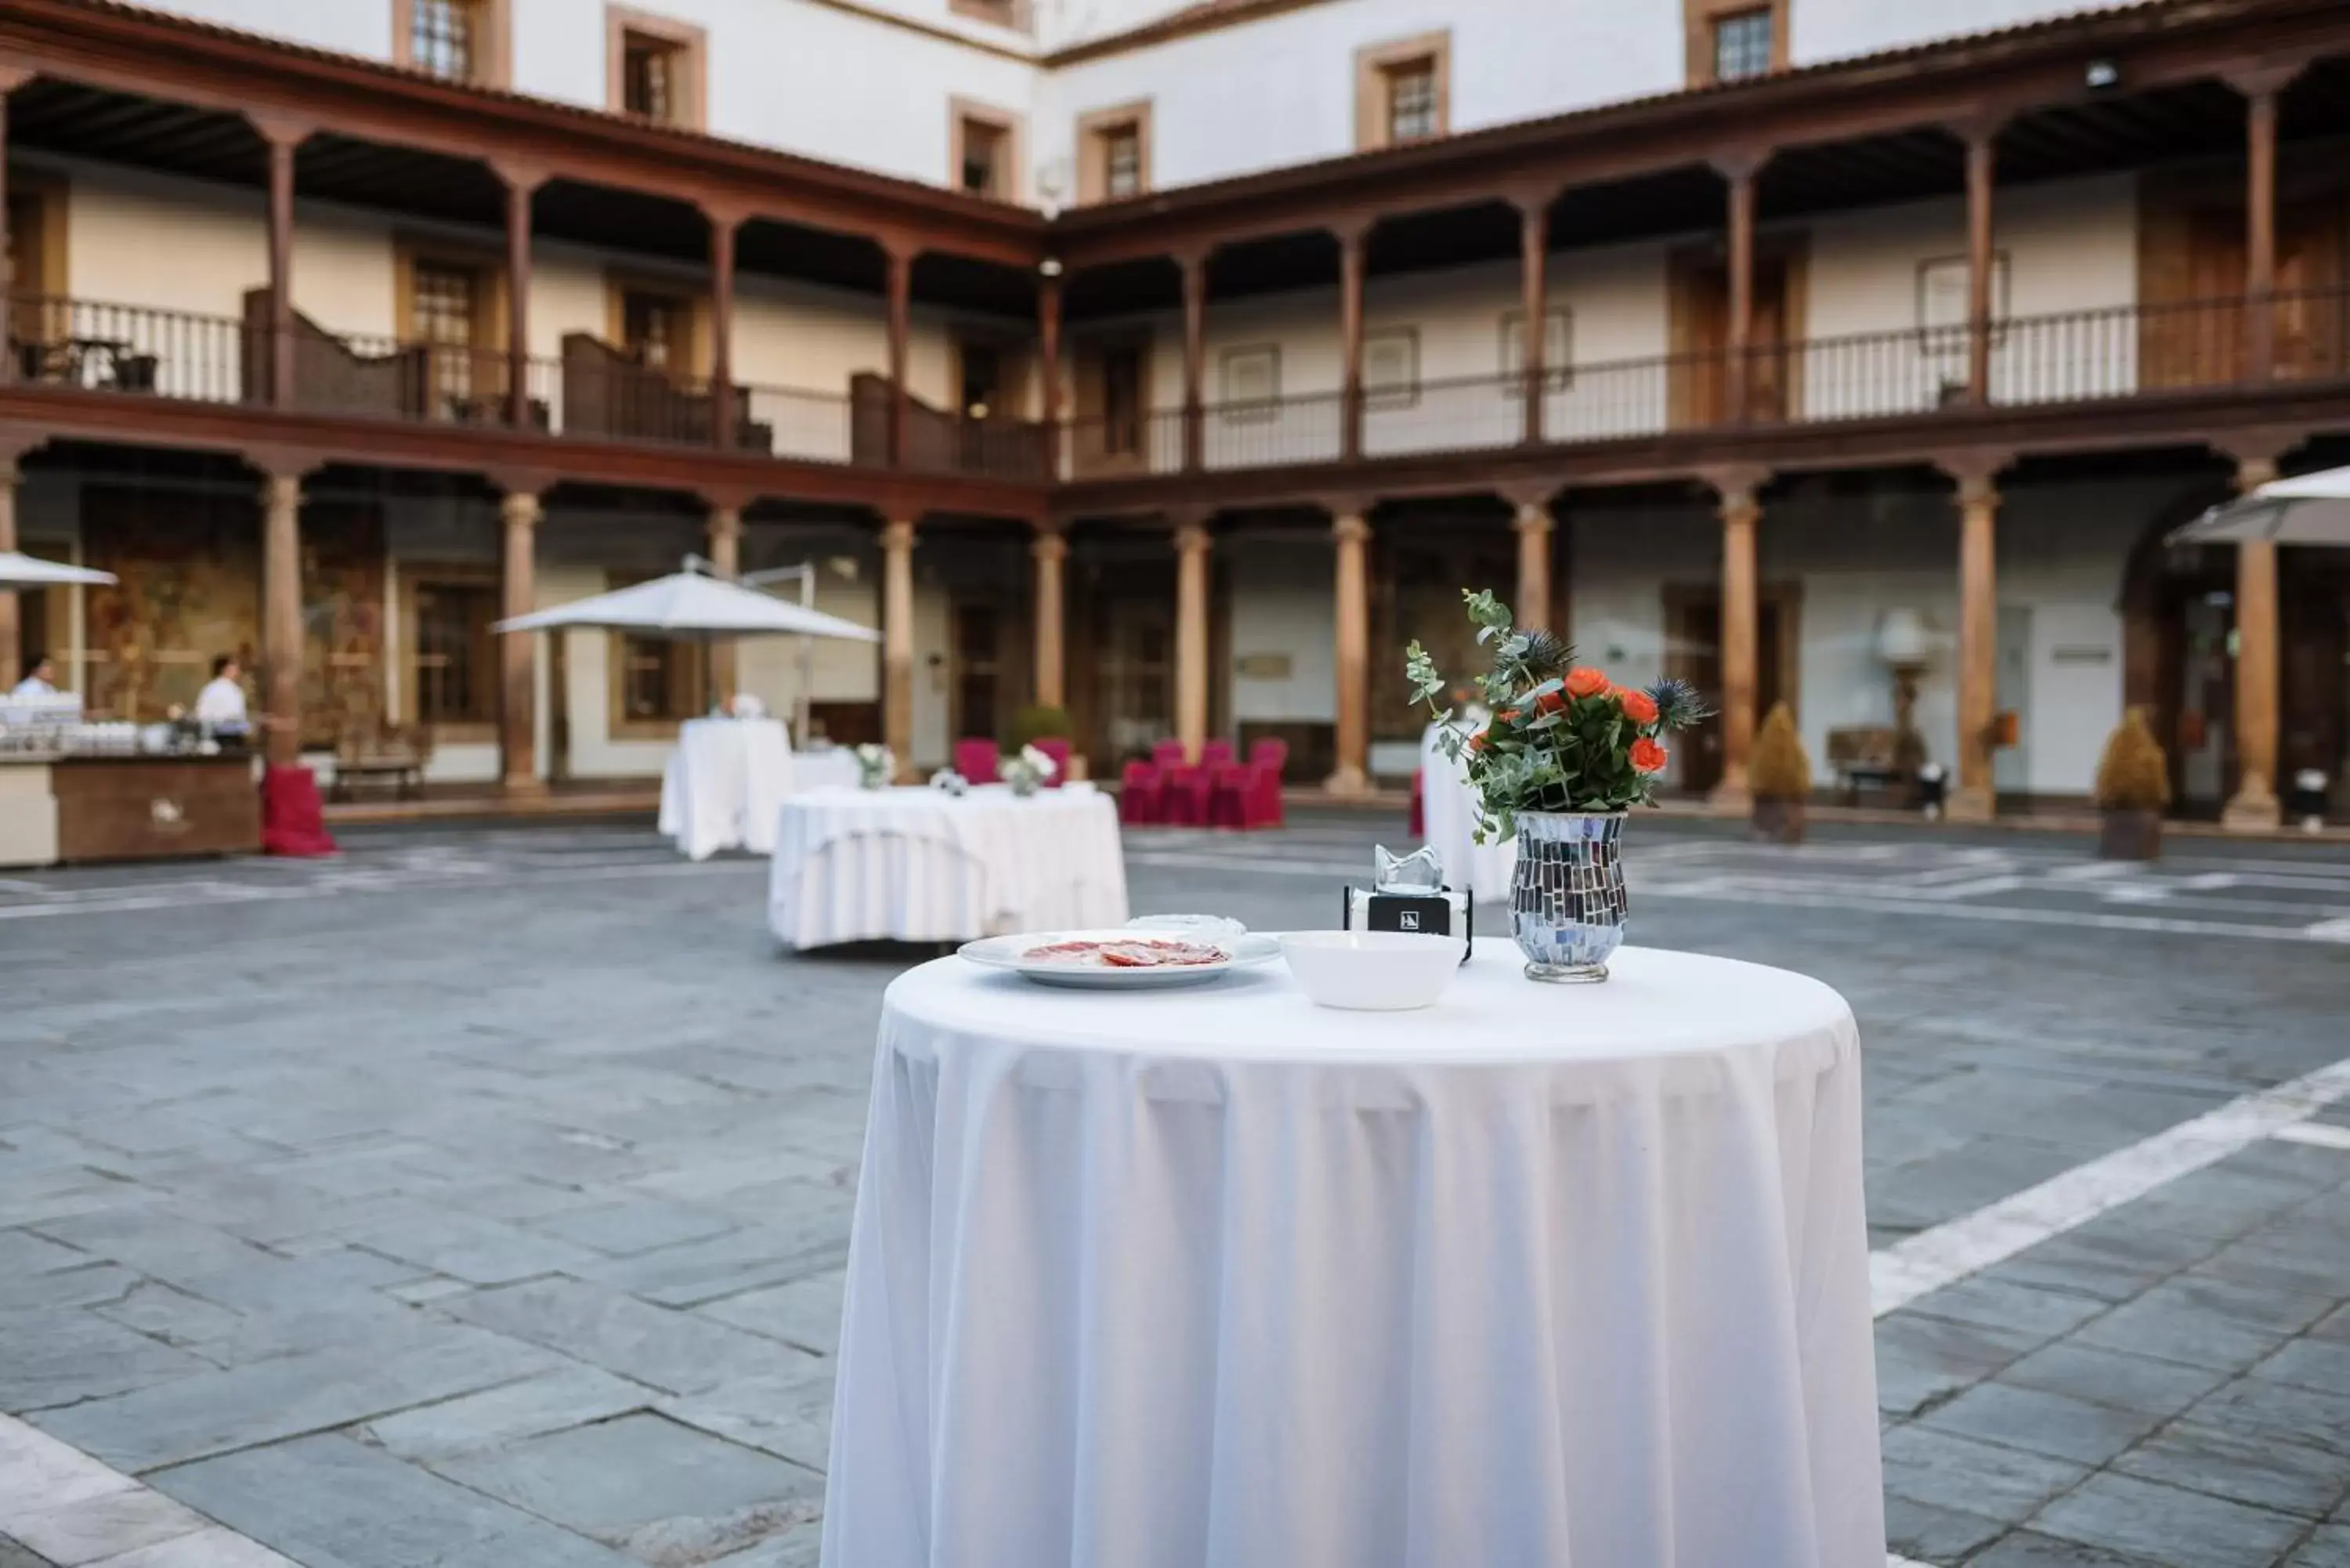 Banquet/Function facilities, Banquet Facilities in Eurostars Hotel de la Reconquista